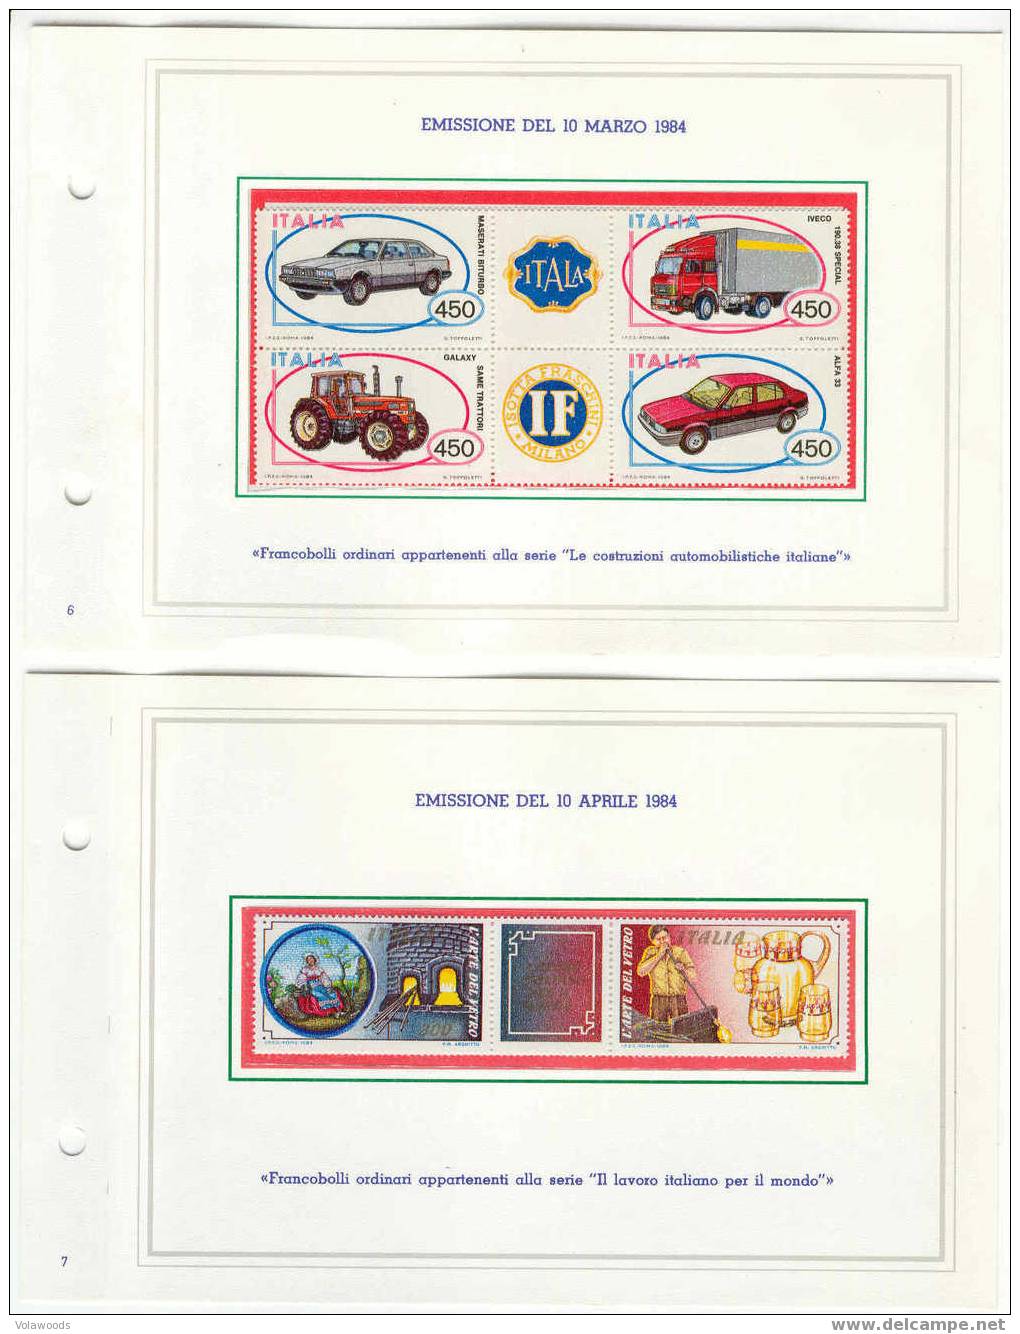 Italia - Annata Completa 1984 In Libretto Delle Poste Completo Di Tutte Le Carte Valori Emesse (con Interi Postali) - Full Years